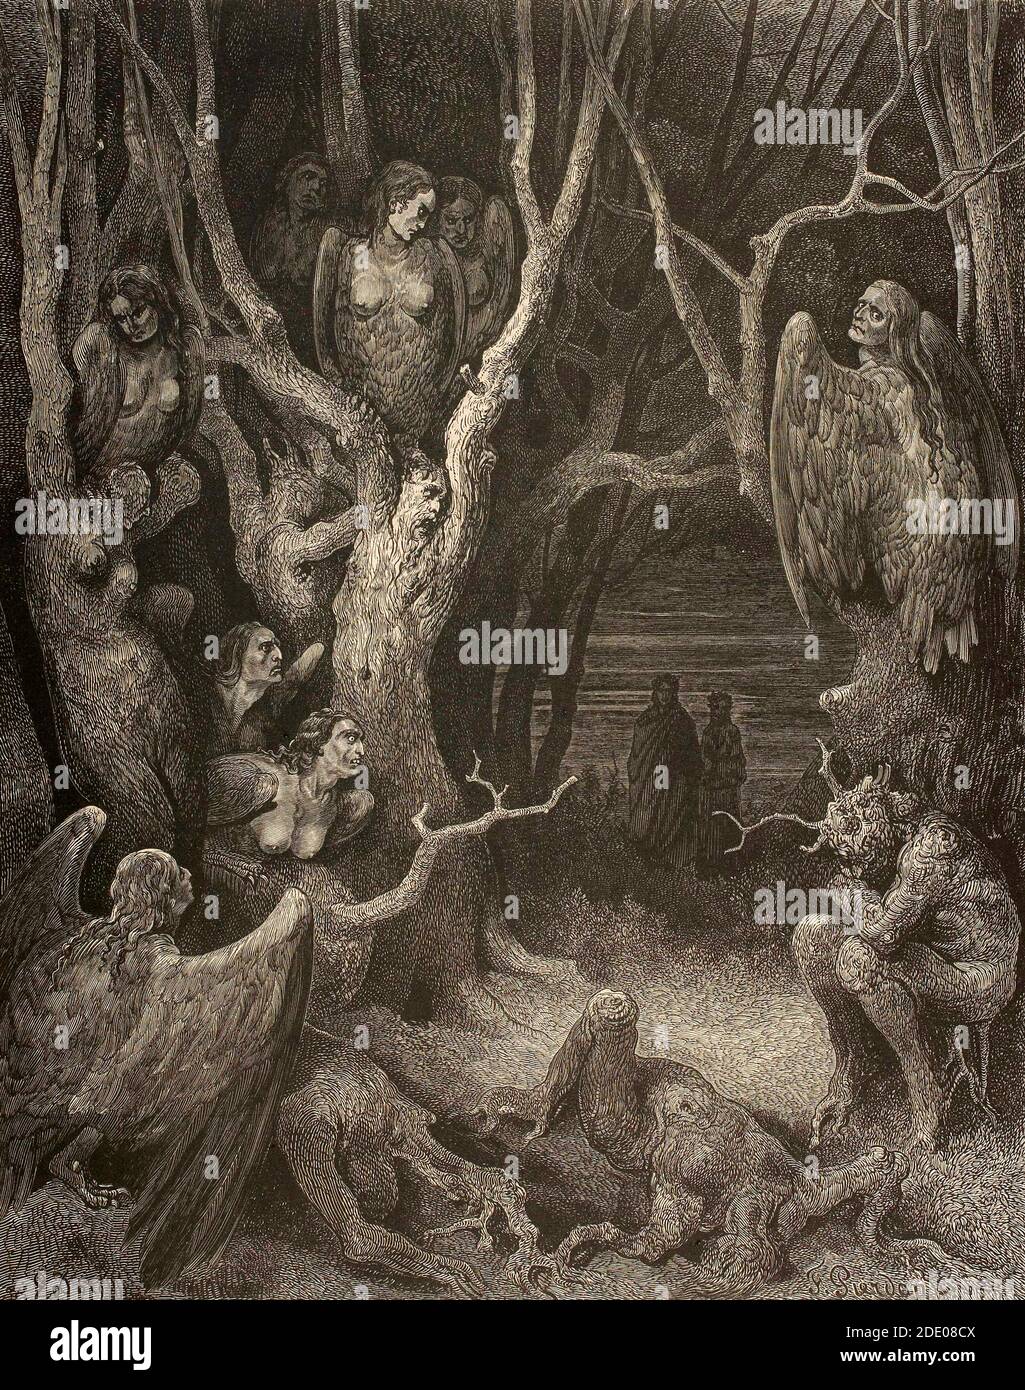 Dante Divina Commedia - Hell -  XIII Canto  - La selva dei suicidi - VII Circle - illustration by Gustave Dorè Stock Photo